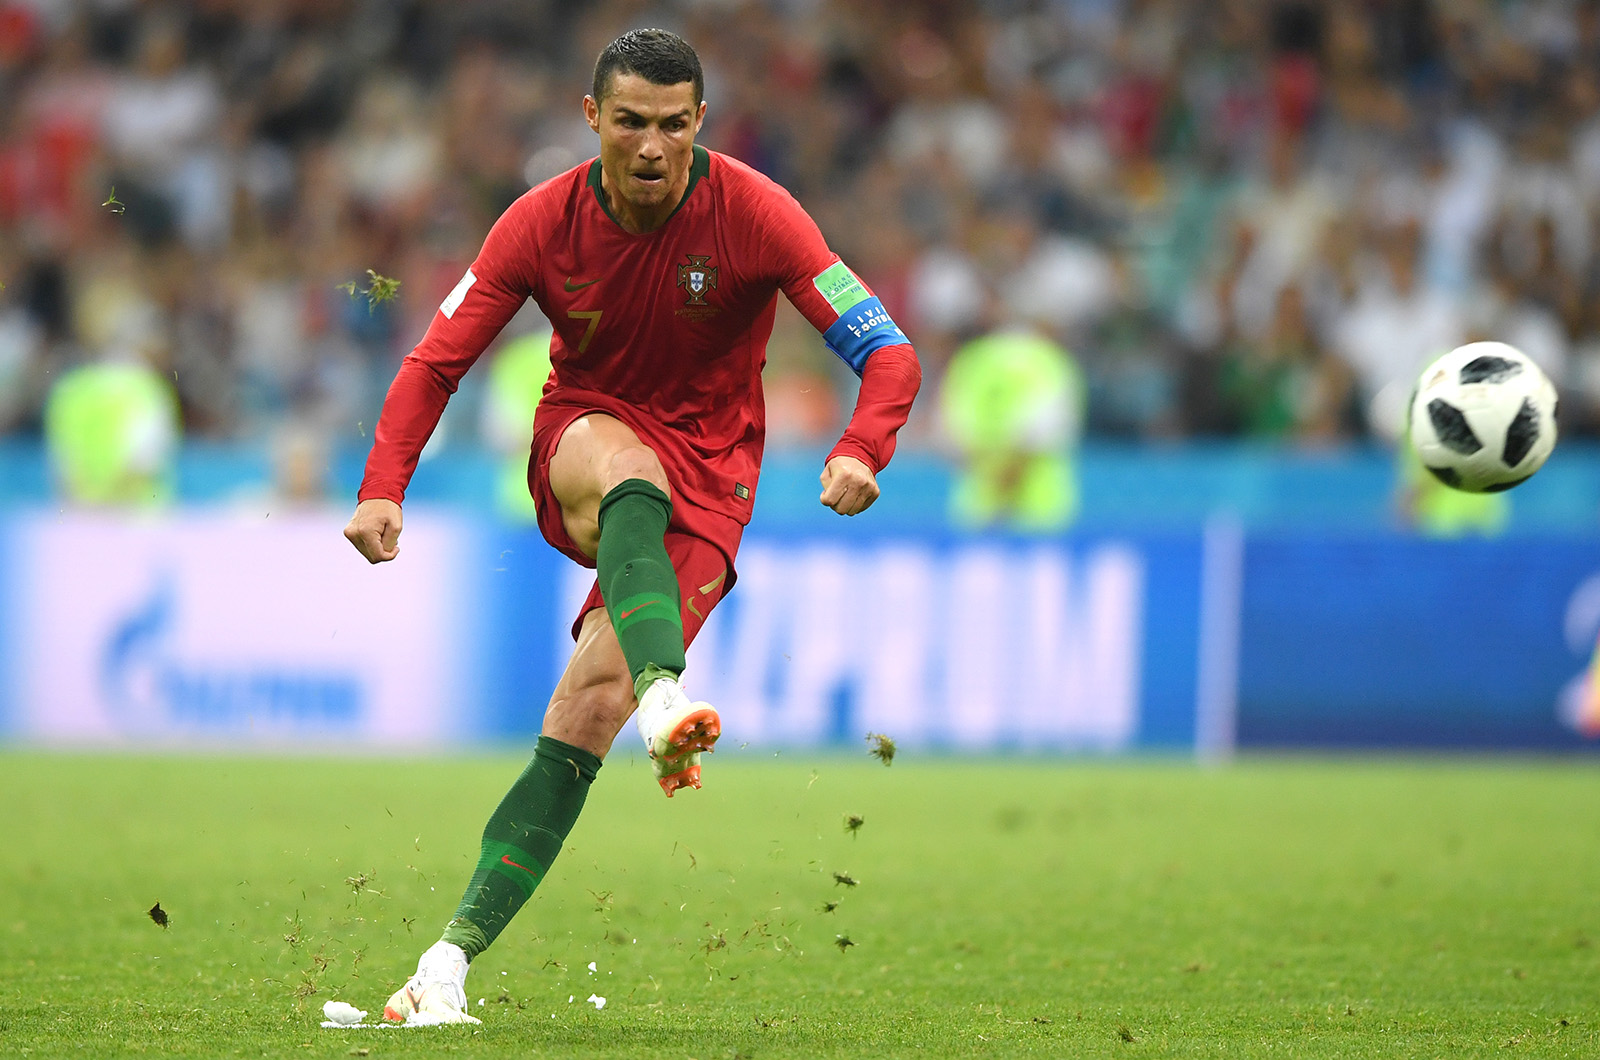 Cristiano Ronaldo Free Kick Russia 2018 World Cup